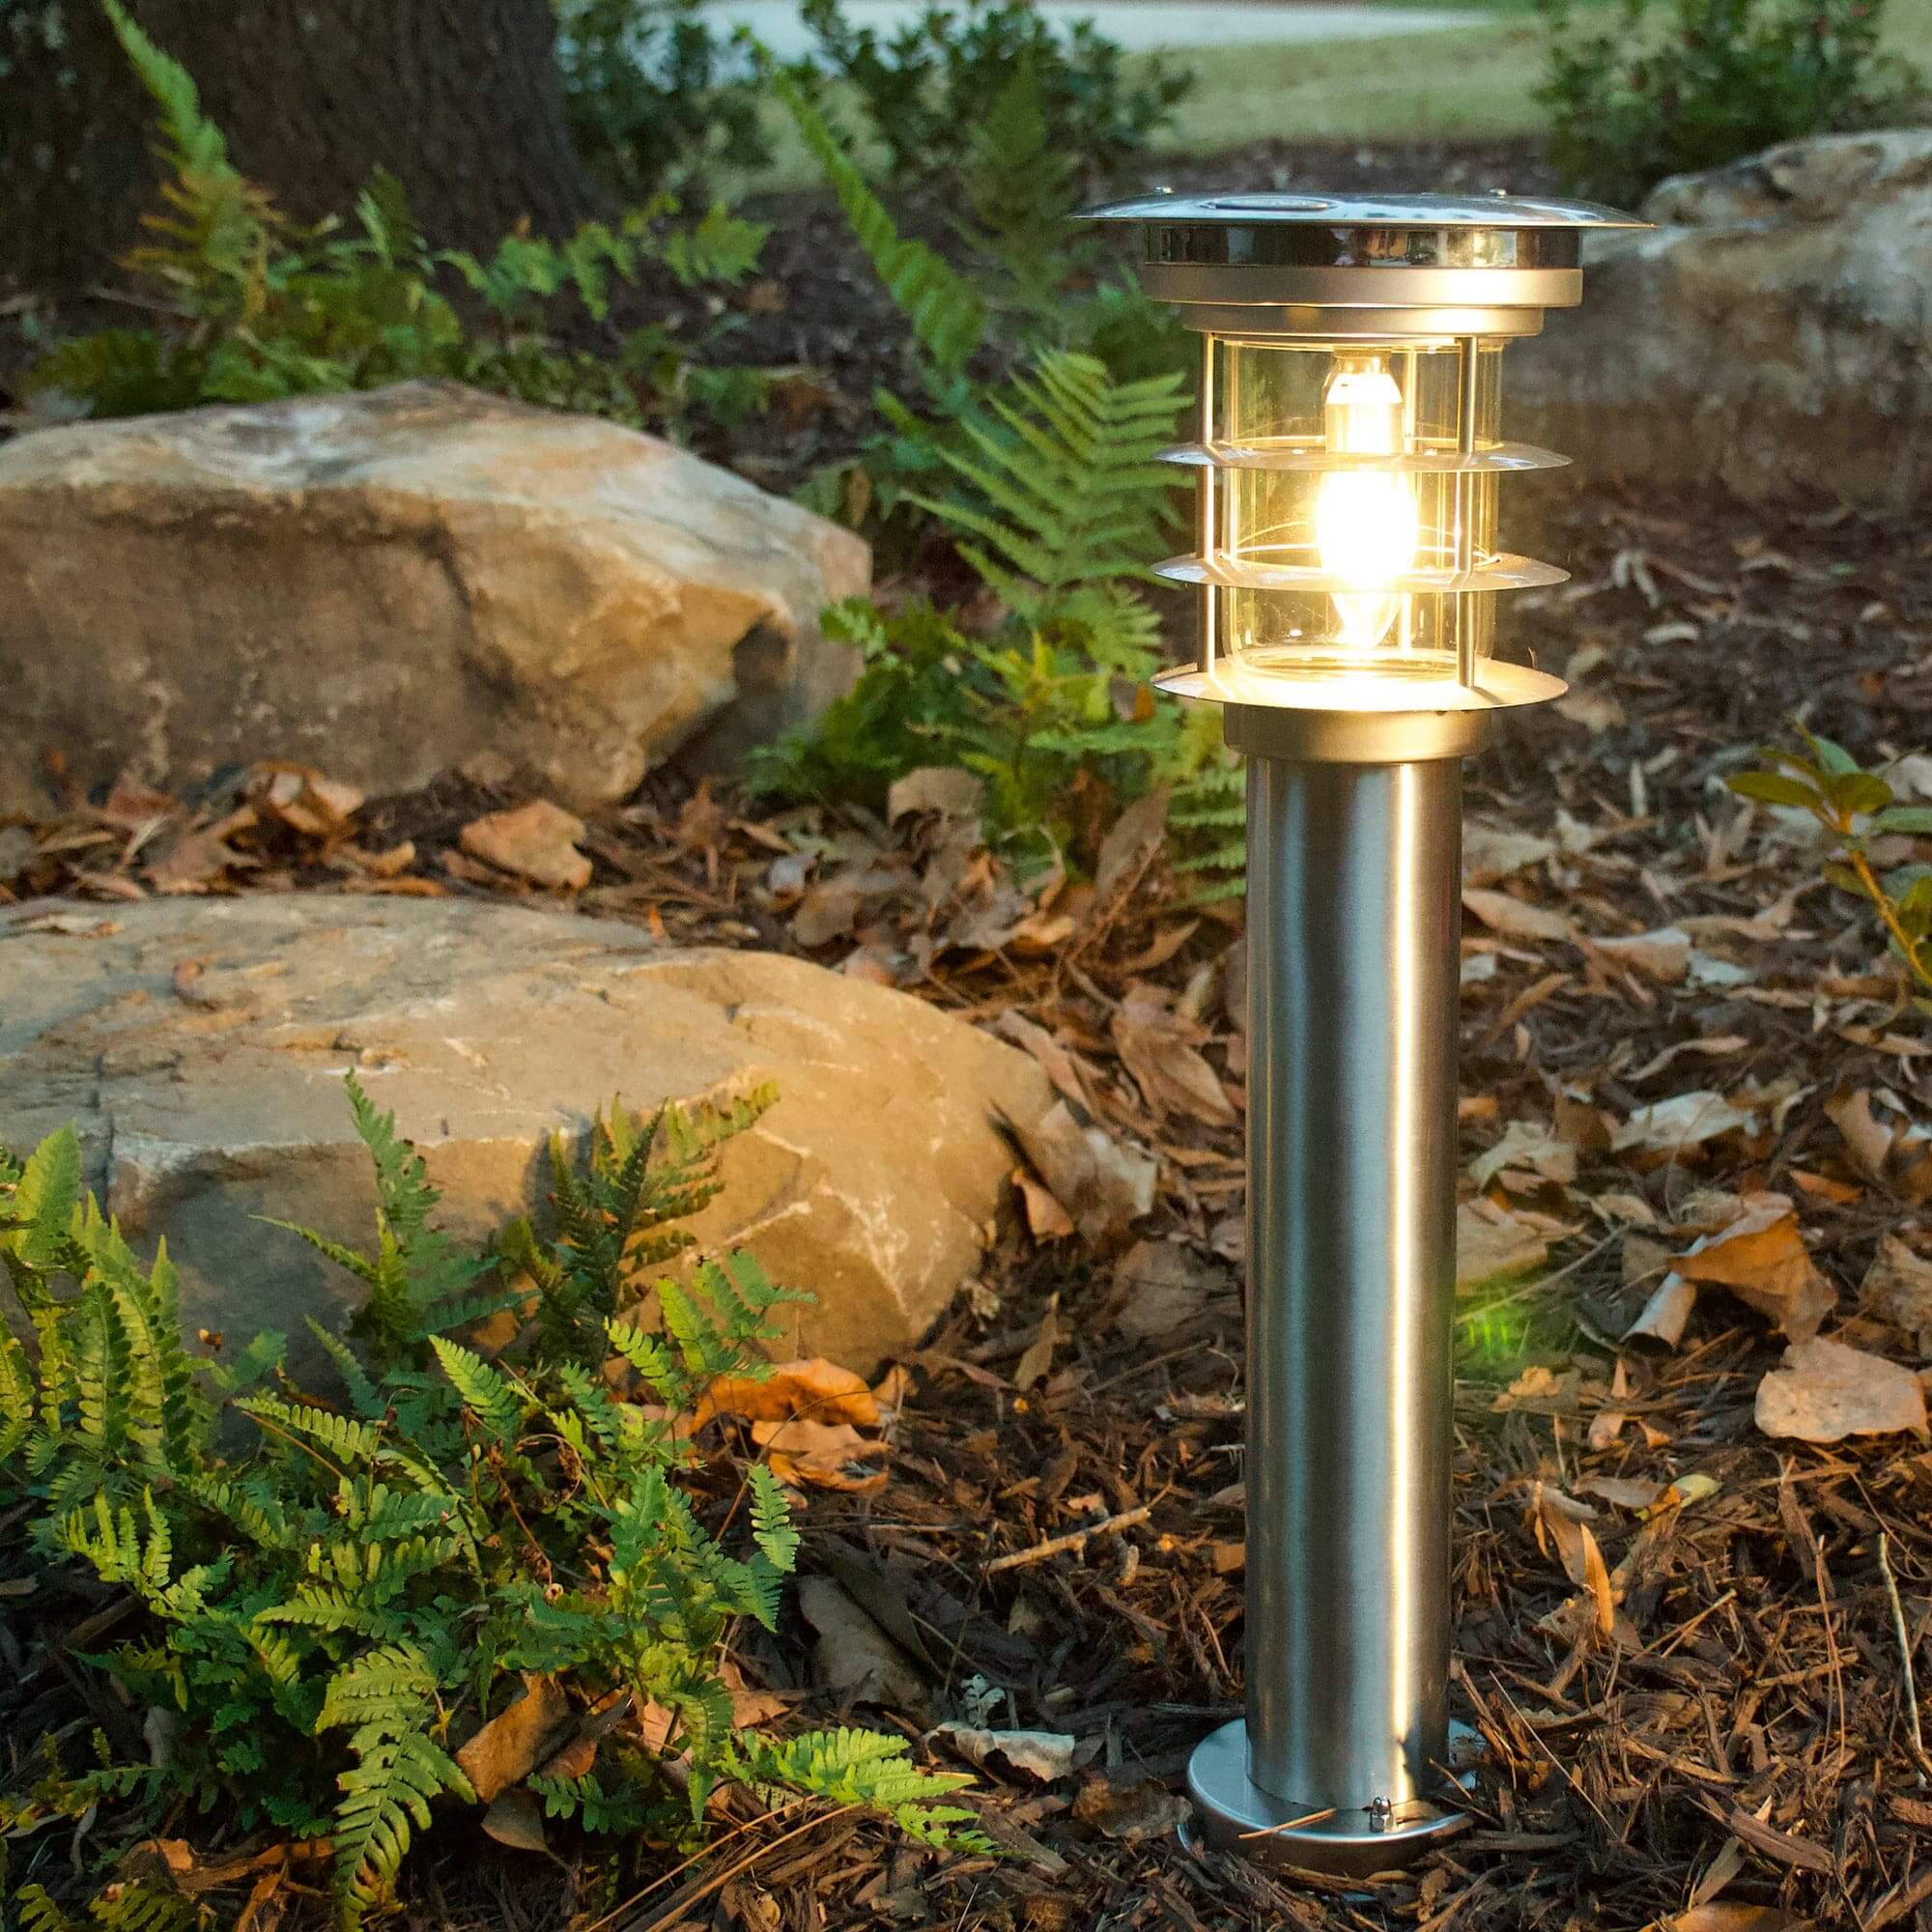 Premium Stainless Steel Solar Pathway Bollard Light – Dusk to Dawn Illumination